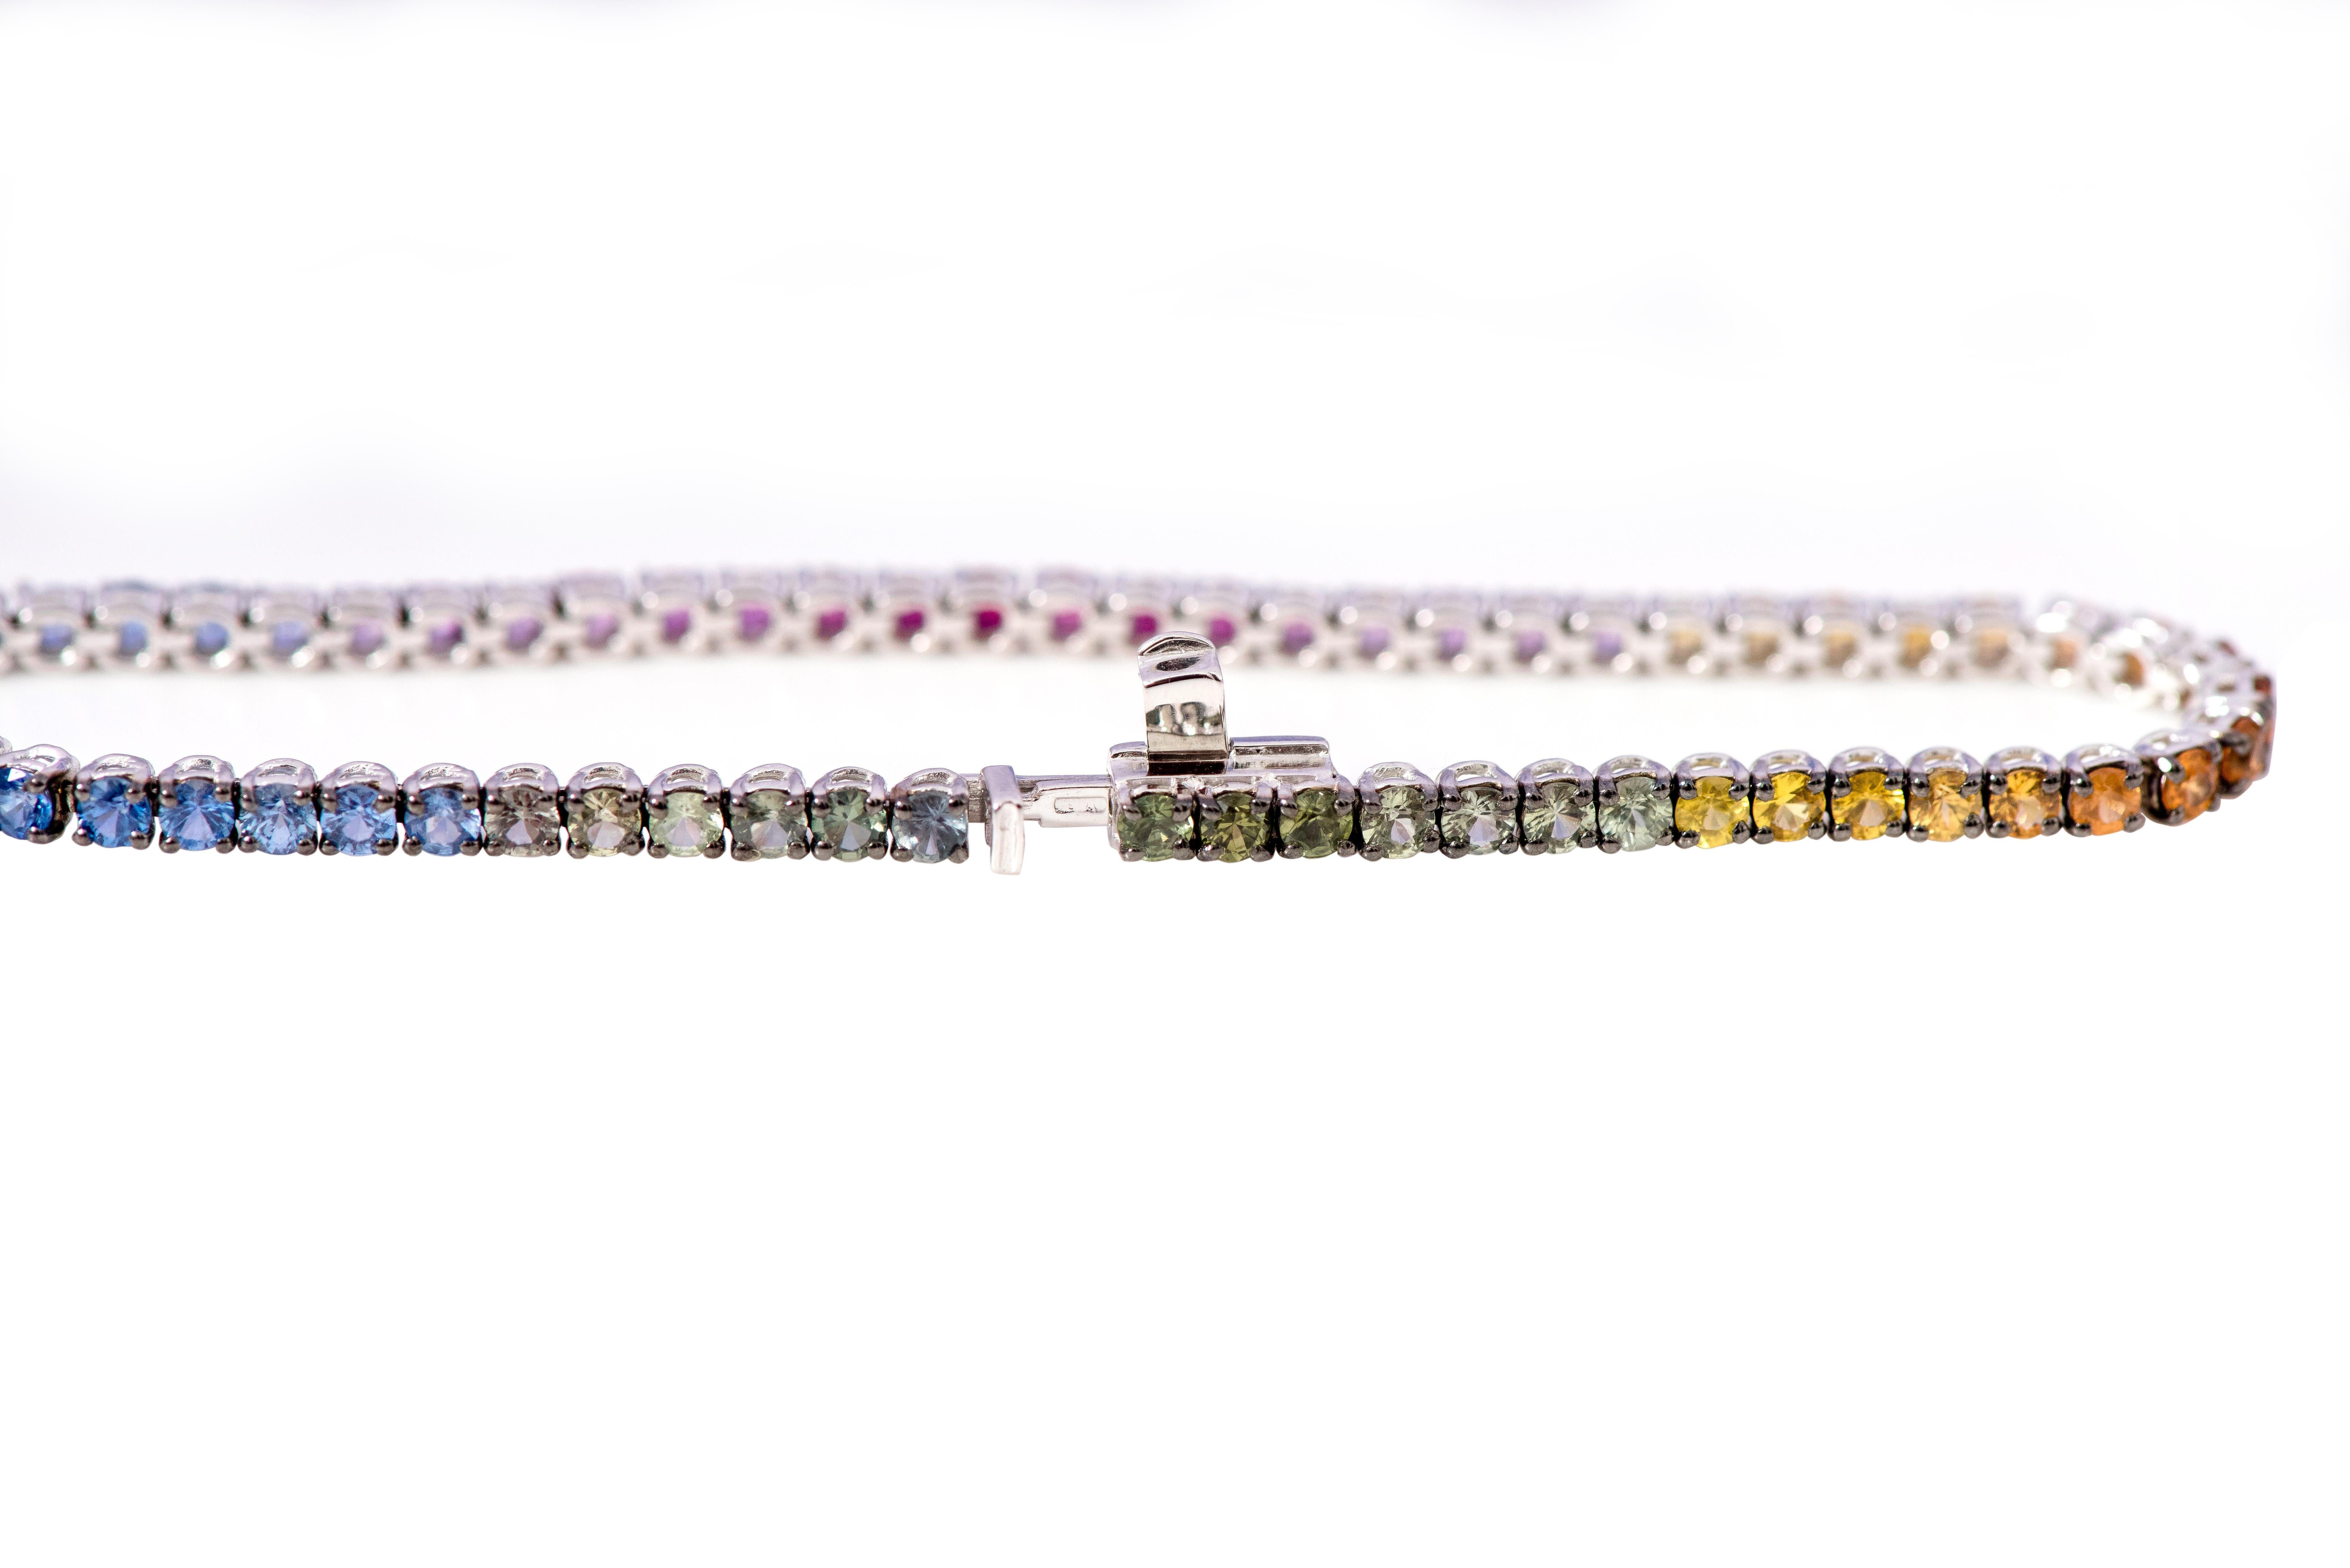 18 Karat Weißgold 5::33 Karat Multi-Saphir Regenbogenfarbe Tennisarmband

Dieses edle und elegante dünne Tennisarmband mit mehreren Saphiren ist unvergänglich. Das Tennisarmband mit gleich großen runden Solitär-Multisaphiren mit perfektem Schliff